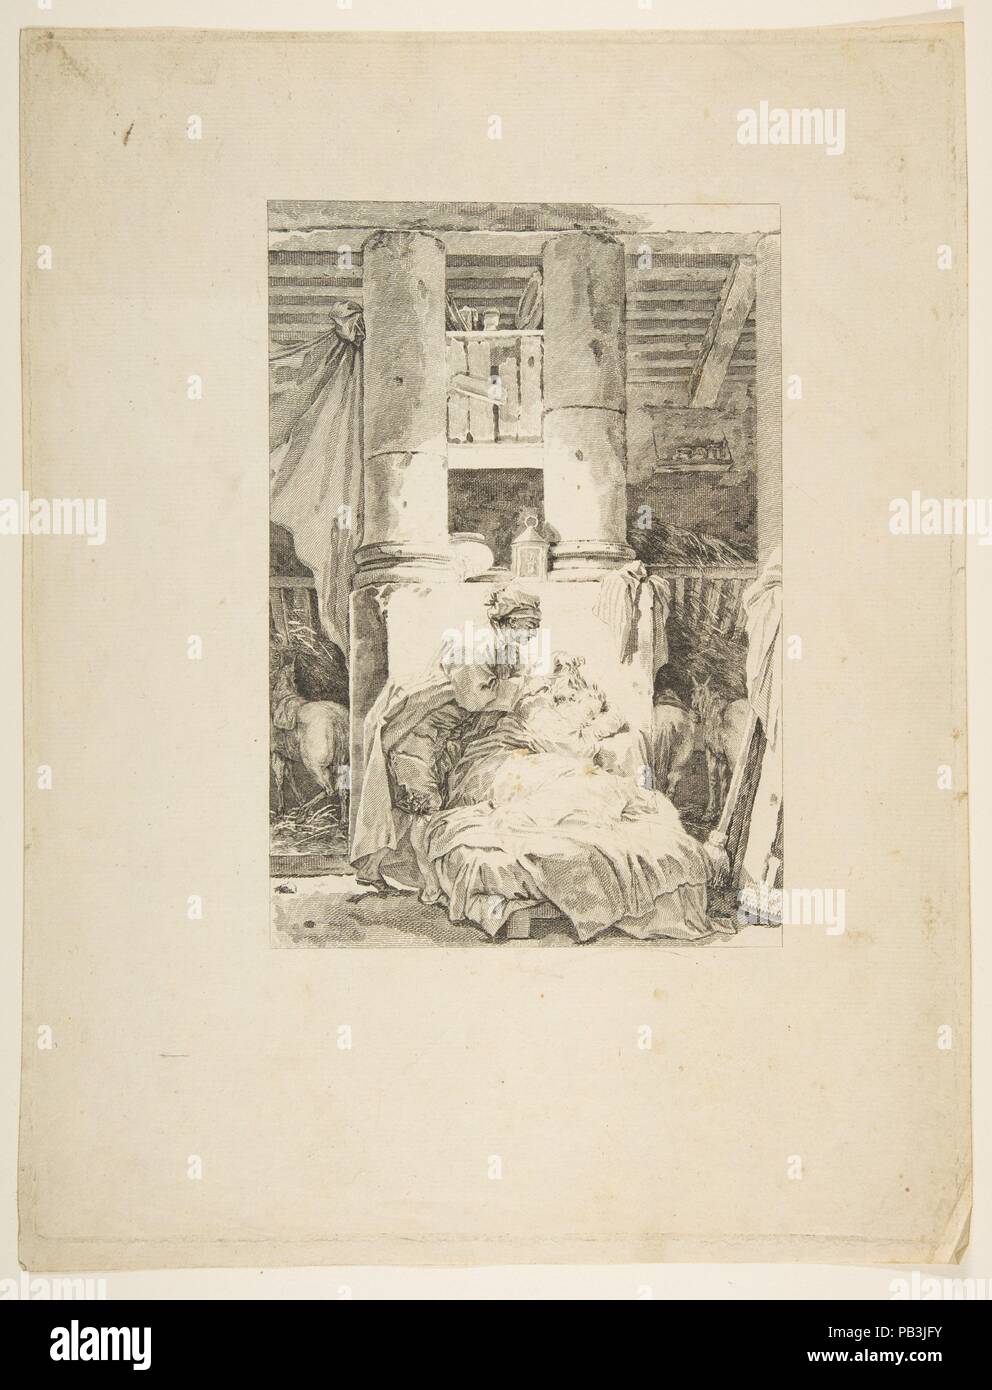 Le Muletier, from Contes et nouvelles en vers par Jean de La Fontaine.  A Paris, de l'imprimerie de  P. Didot, l'an III de la République, 1795. Artist: Jean Honoré Fragonard (French, Grasse 1732-1806 Paris). Author: Jean de La Fontaine (French, Château-Thierry 1621-1695 Paris). Dimensions: Sheet: 12 7/8 × 9 15/16 in. (32.7 × 25.3 cm)  Plate: 12 1/2 × 9 9/16 in. (31.7 × 24.3 cm). Publisher: Pierre Didot l'ainé (French, 1761-1853). Series/Portfolio: Contes et nouvelles en vers par Jean de La Fontaine.  A Paris, de l'imprimerie de  P. Didot, l'an III de la République, 1795. Date: published in 179 Stock Photo